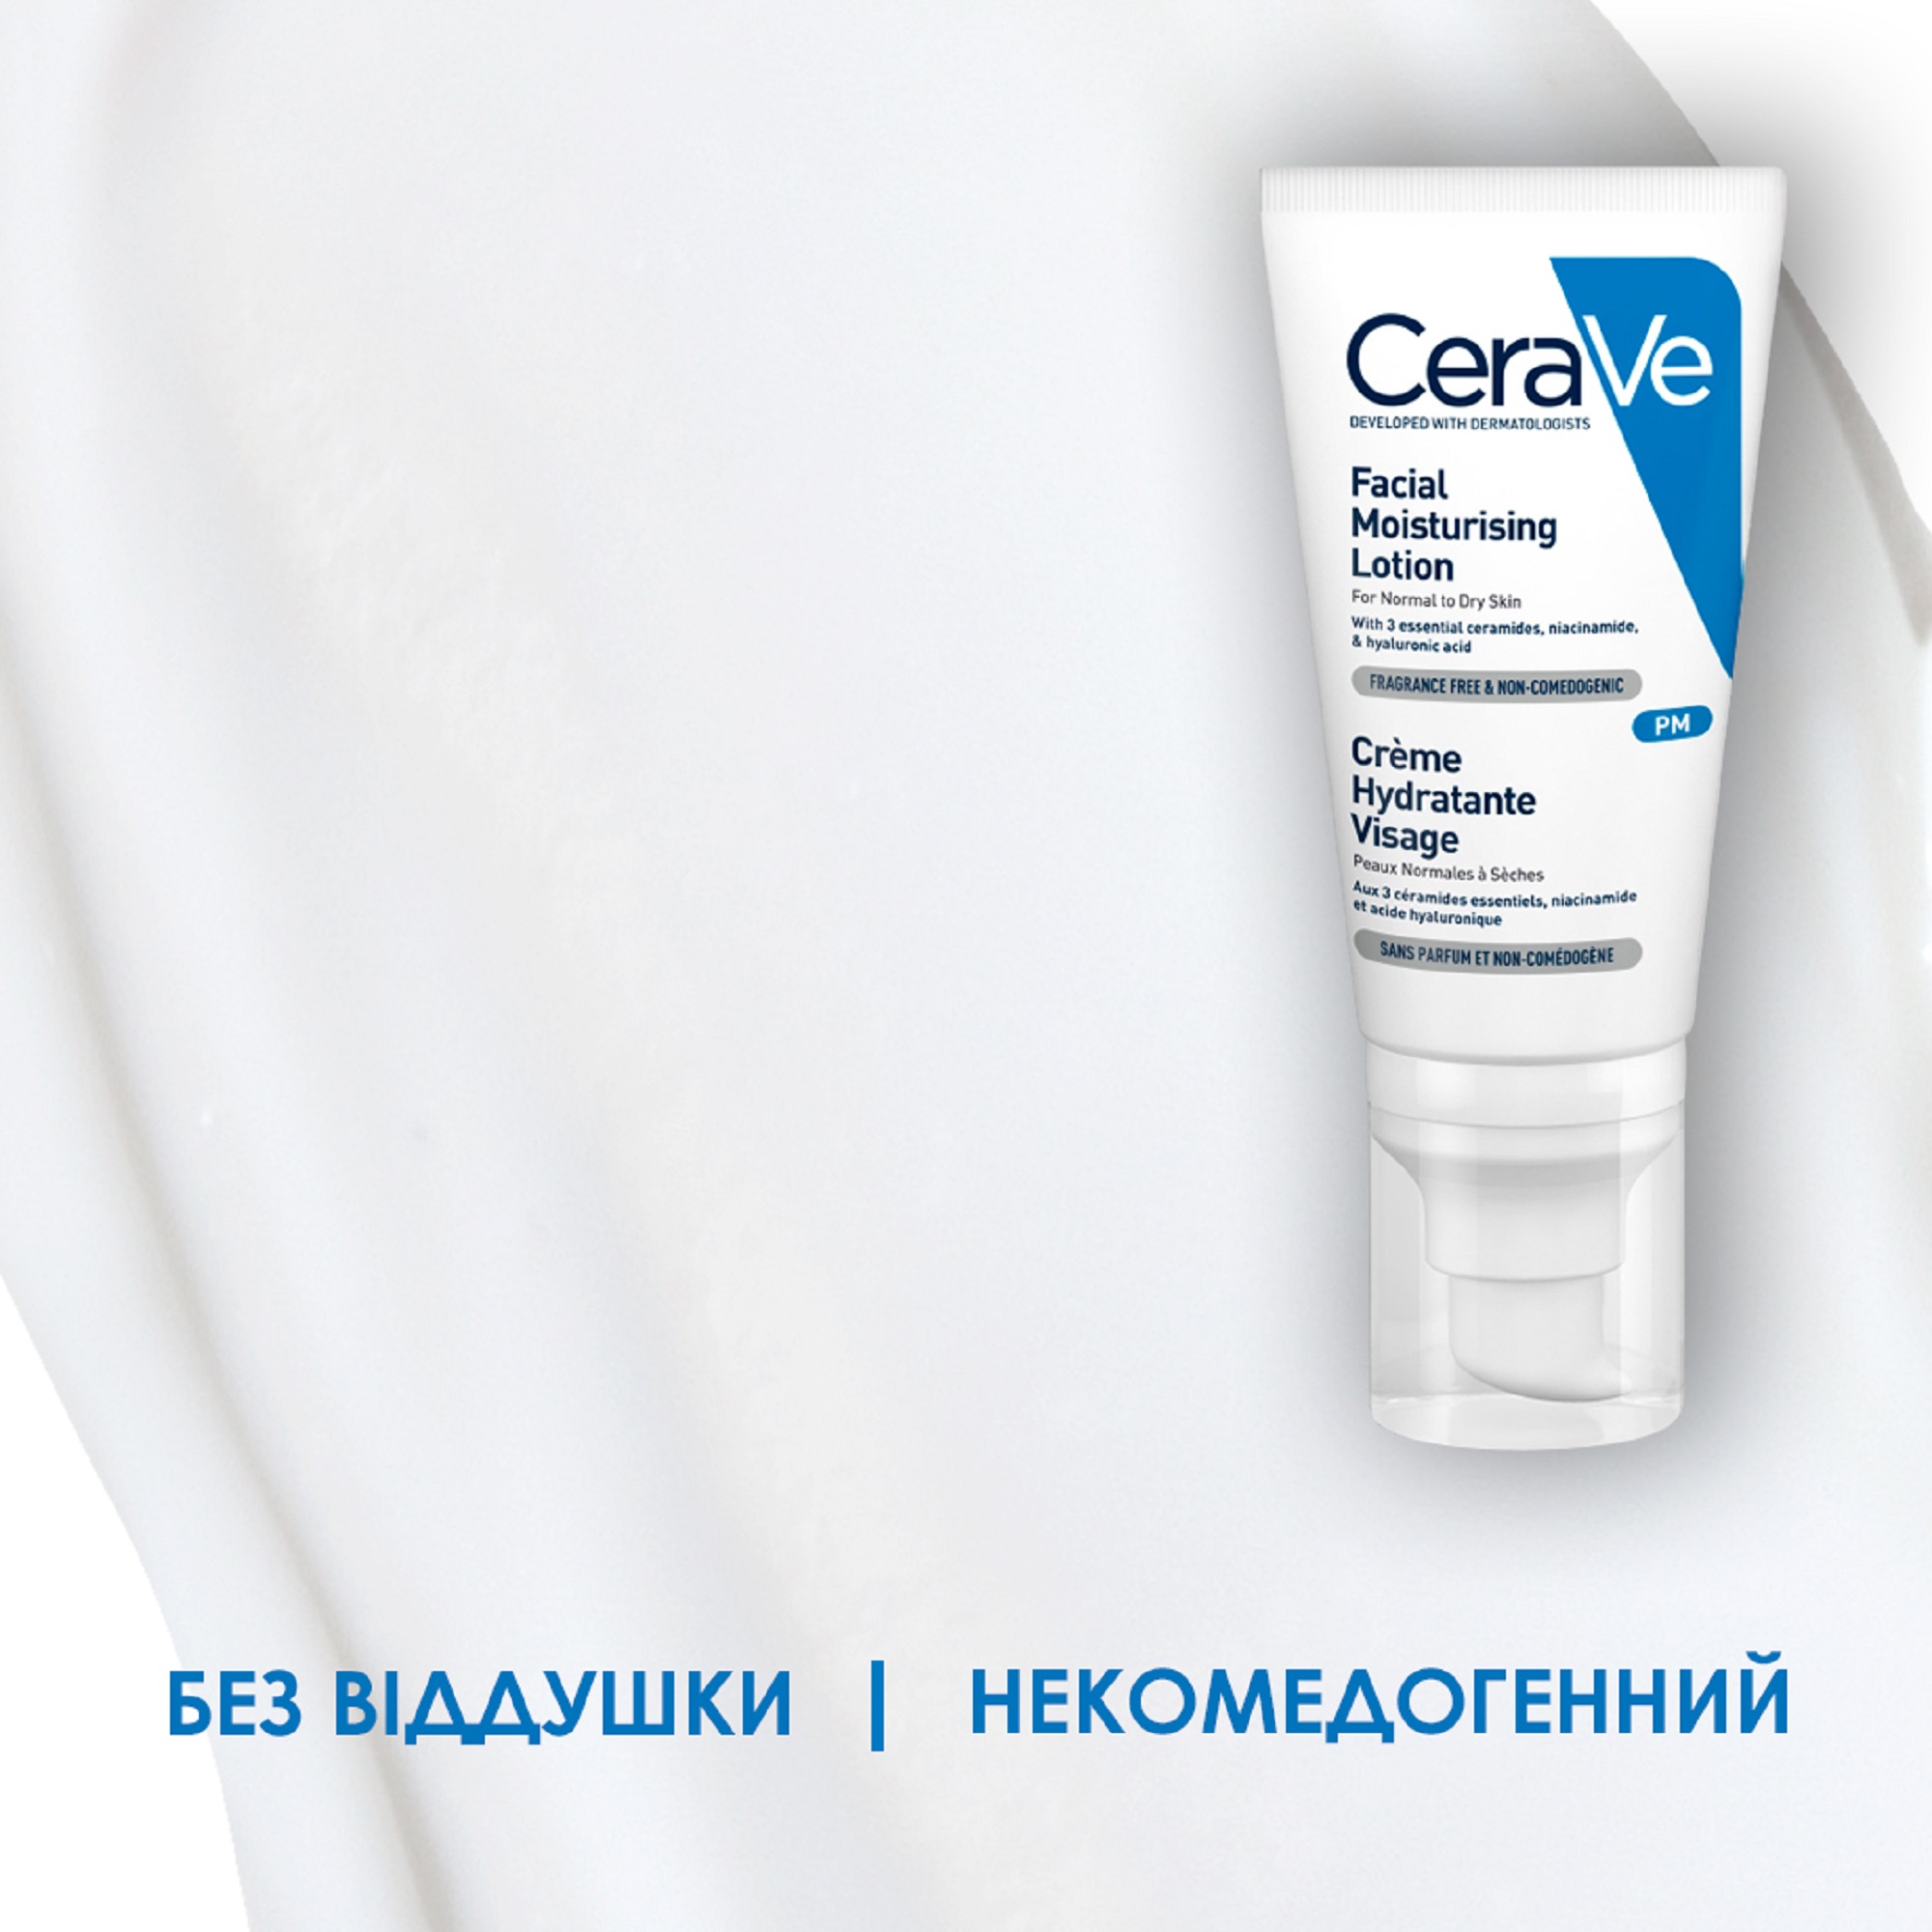 Ночной увлажняющий крем CeraVe для нормальной и сухой кожи лица, 52 мл (MB097101) - фото 7